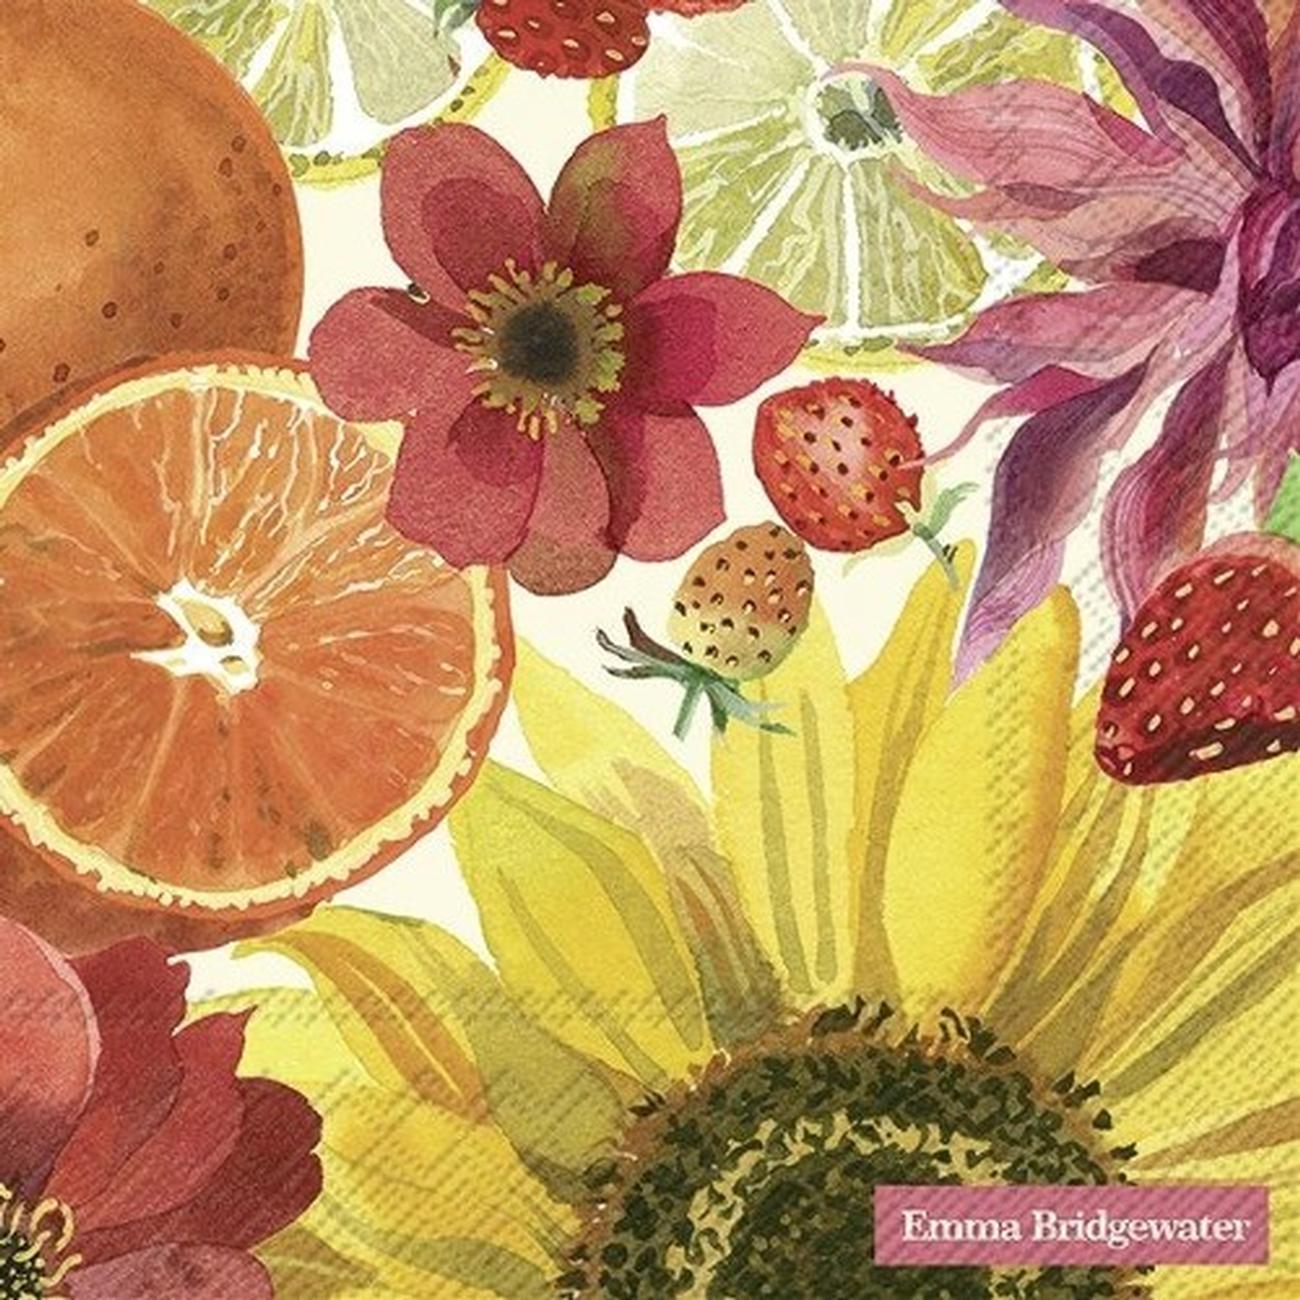 ihr-em-fruits-flowers-lunch-napkins - IHR Lunch Napkins Emma Bridgewater Fruits & Flowers Cream